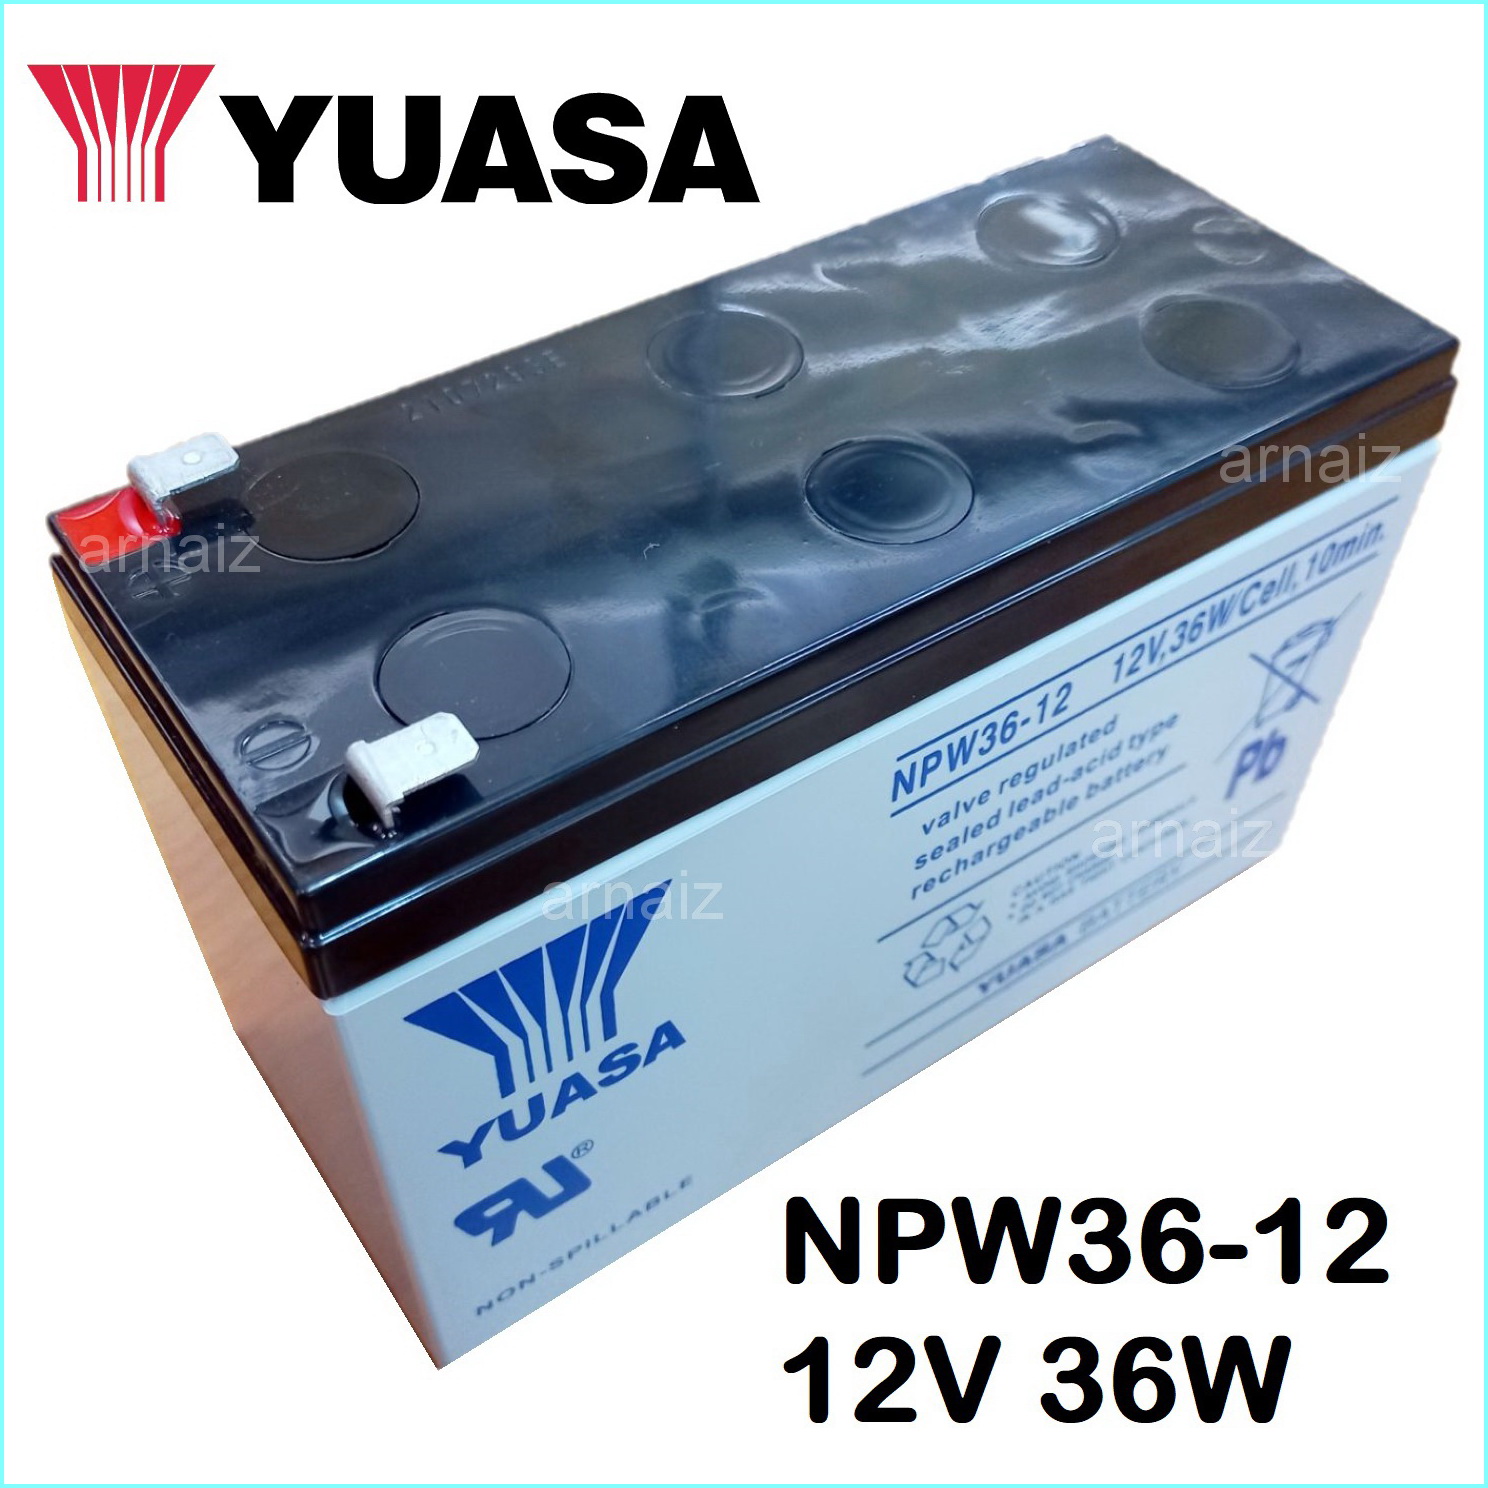 Battery YUASA NP12-12 (VRLA Type) 12V 12Ah - rungseng